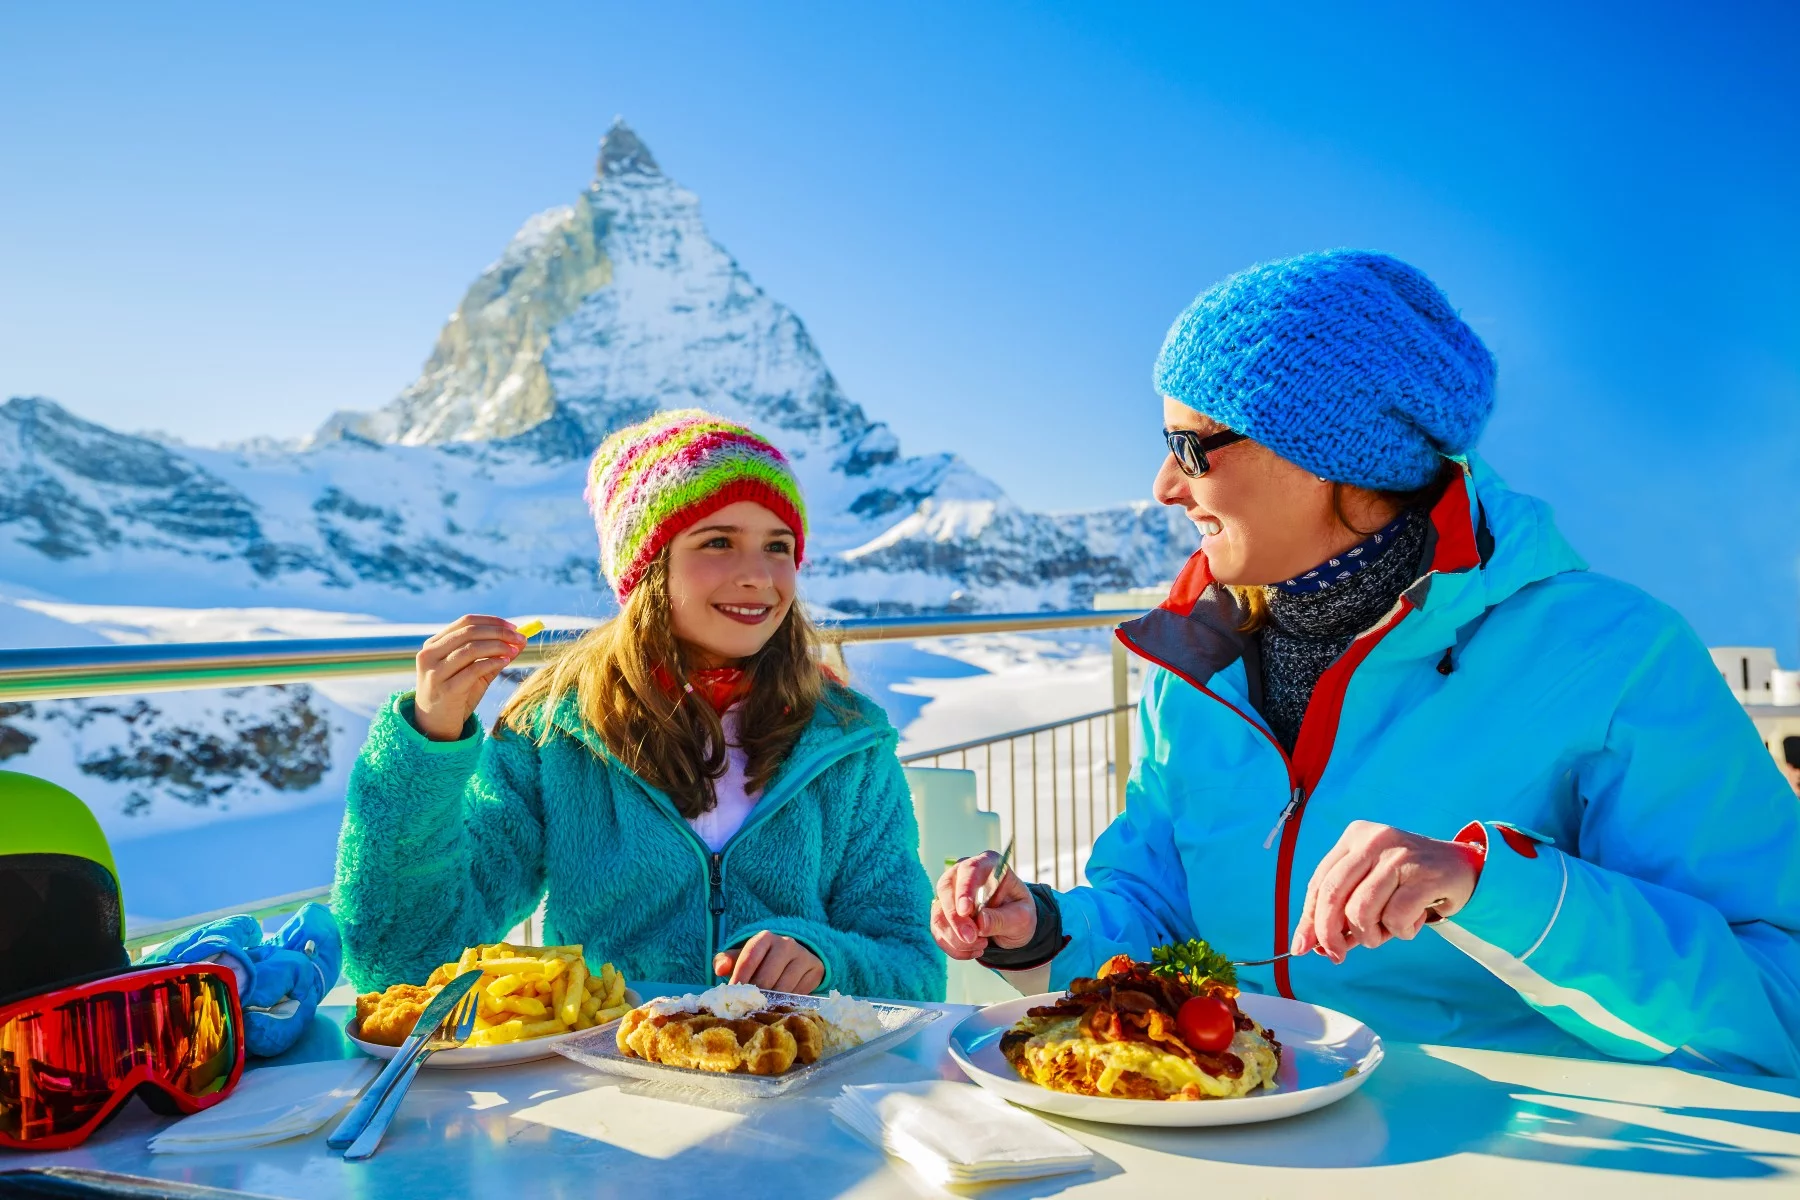 Social etiquette in Switzerland, alps ski dining